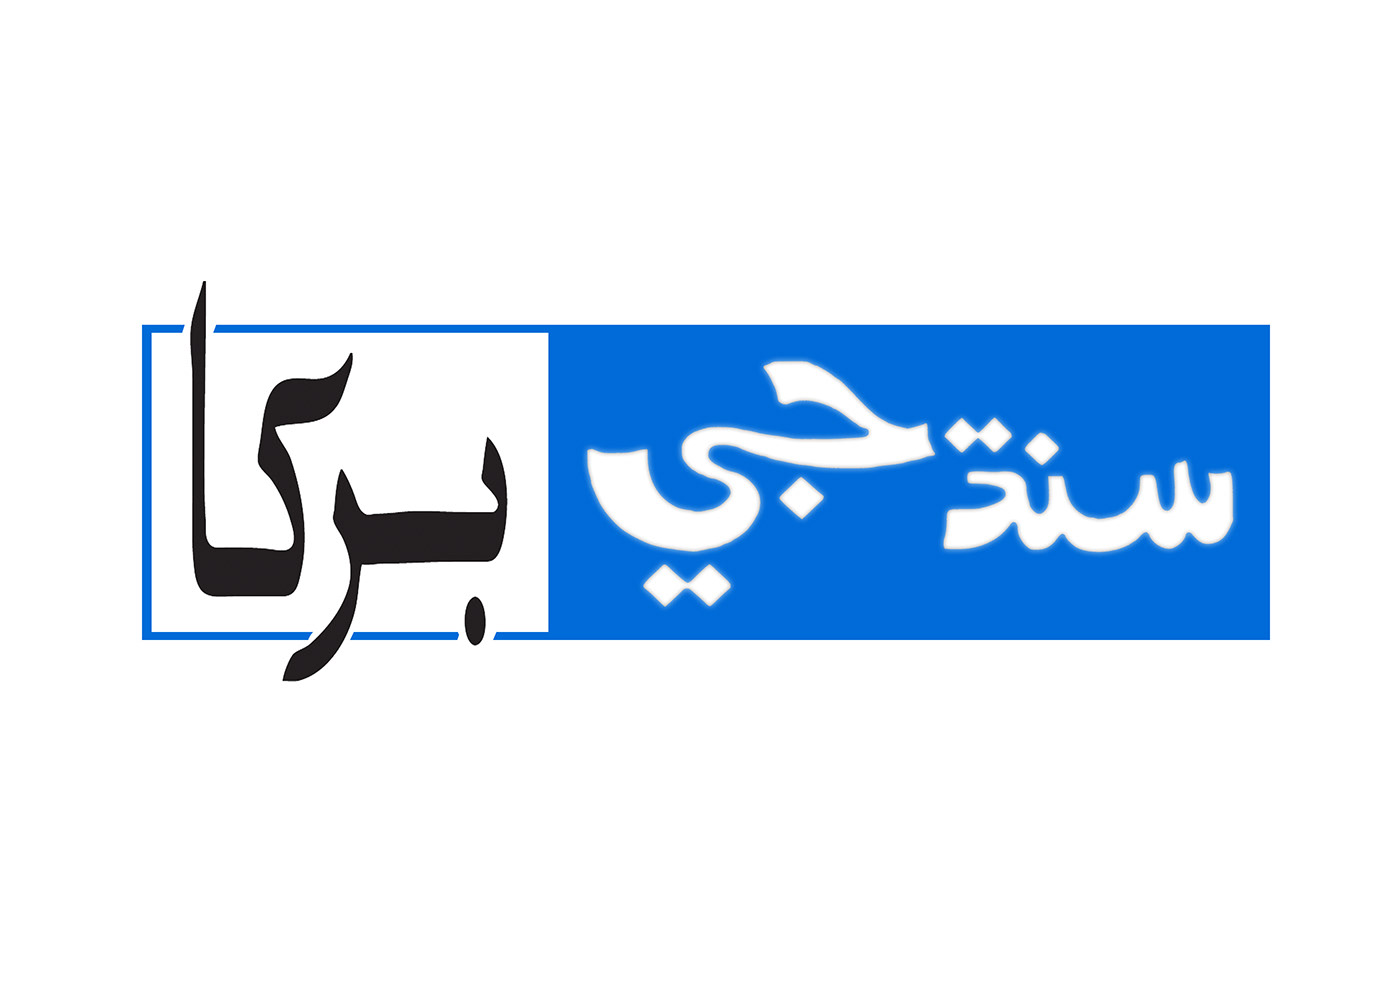 Sindh Ji Barkha Kamran Shabbir KS KS KS Creative Designer newspaper logo sindh freelancer logo logo designer creative logo